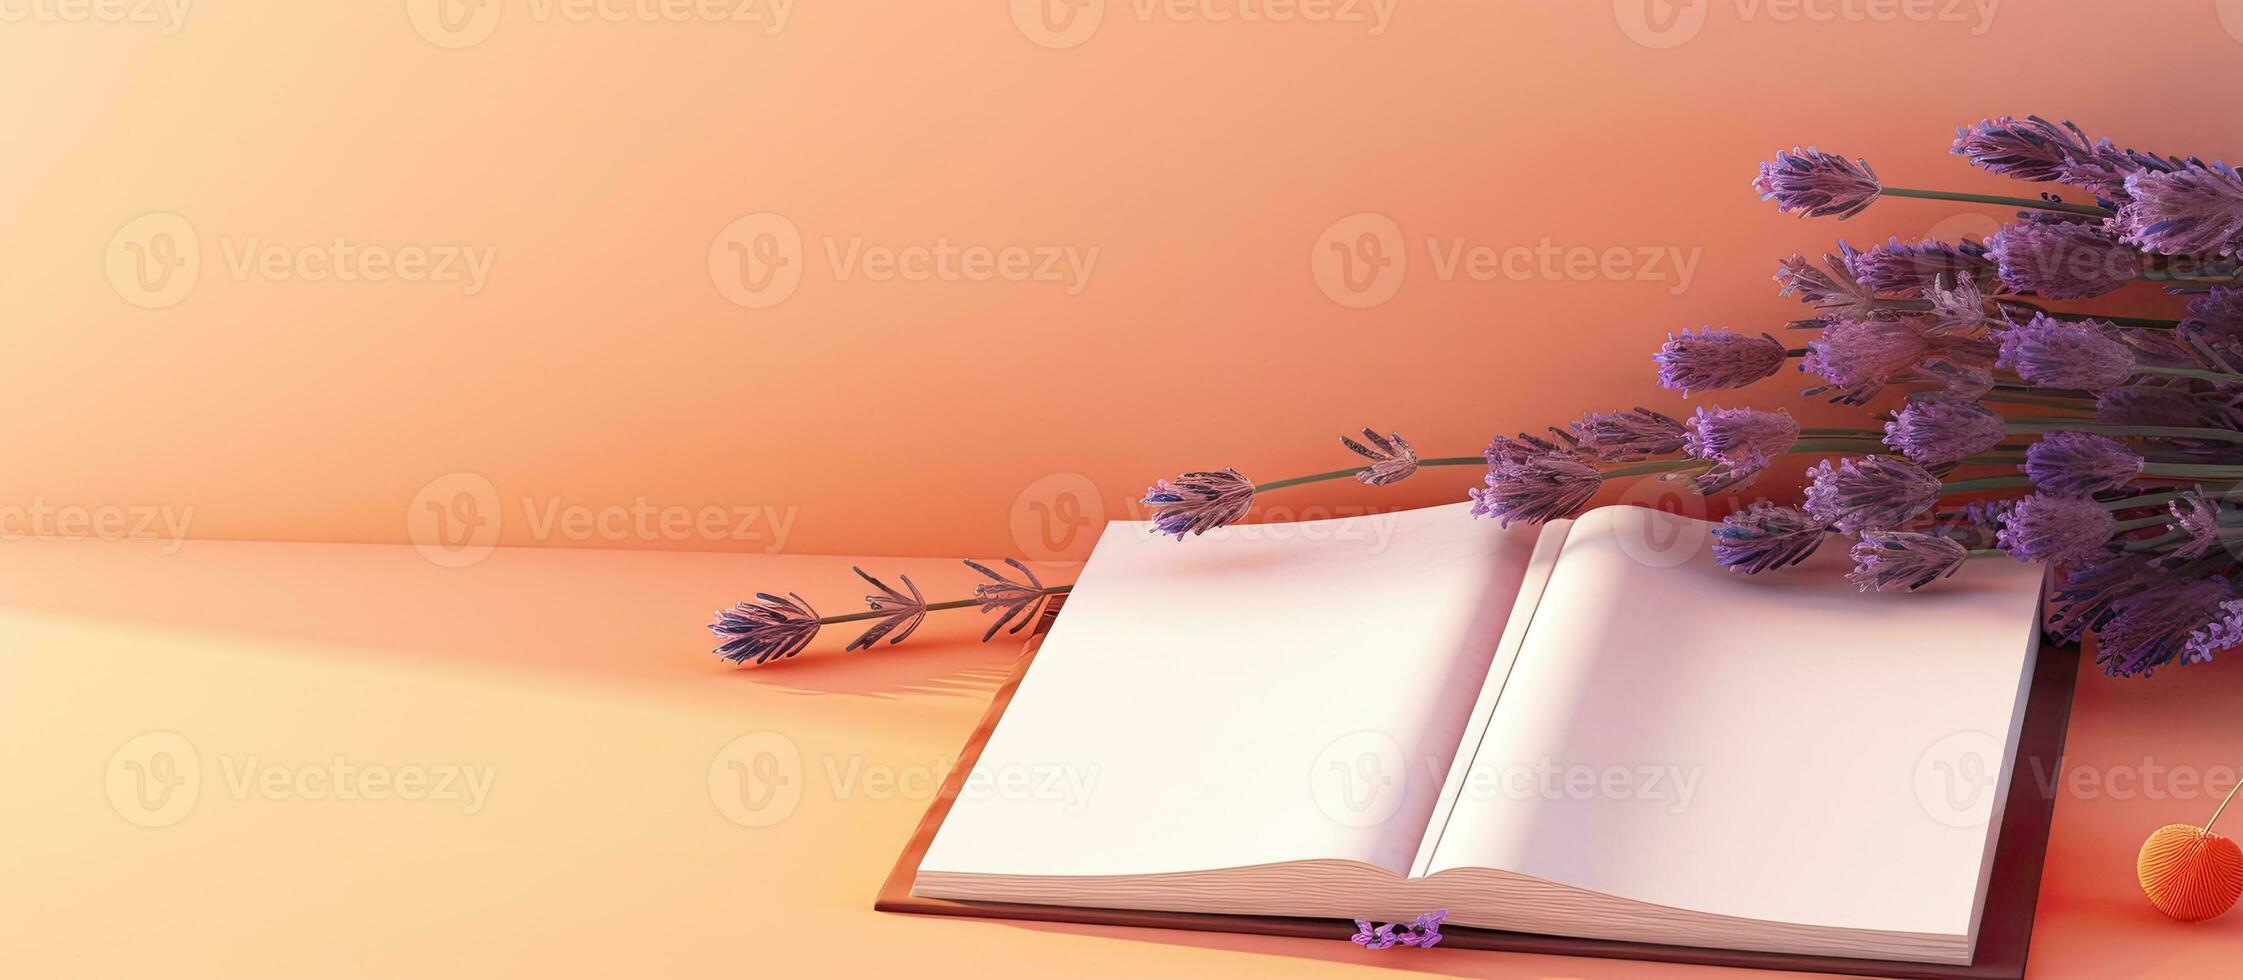 een banier met ruimte voor tekst, met een oranje boek of notitieboekje met lavendel bloemen binnen, foto